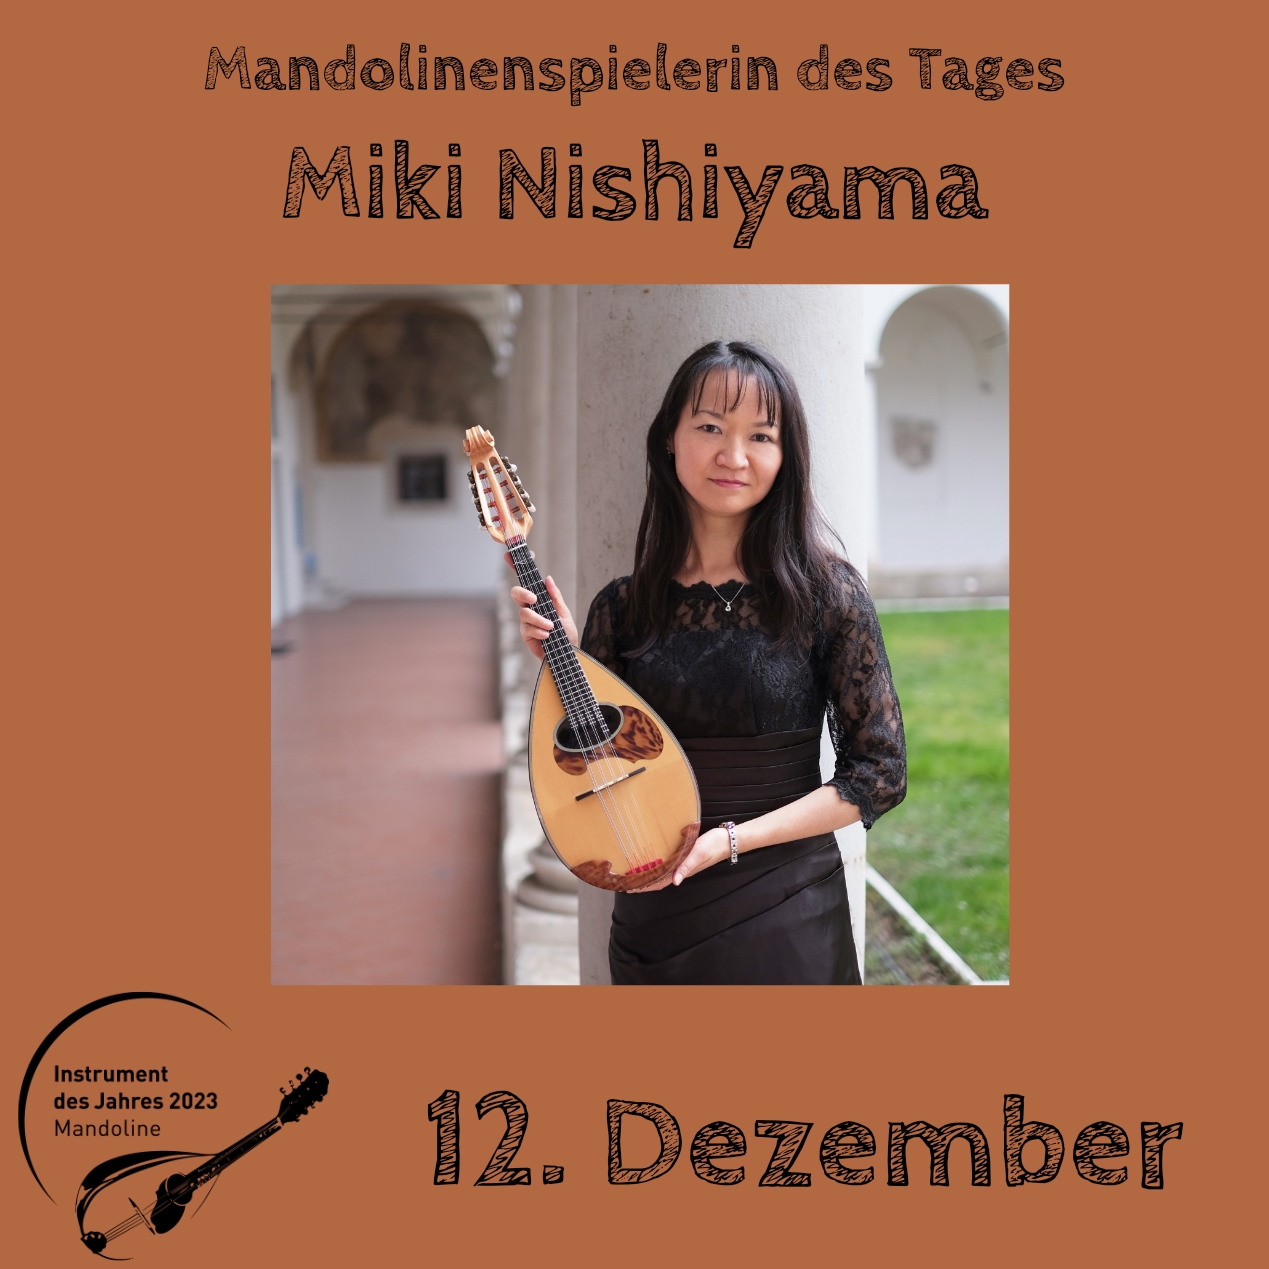 12. Dezember - Miki Nishiyama Instrument des Jahres 2023 Mandolinenspieler Mandolinenspielerin des Tages